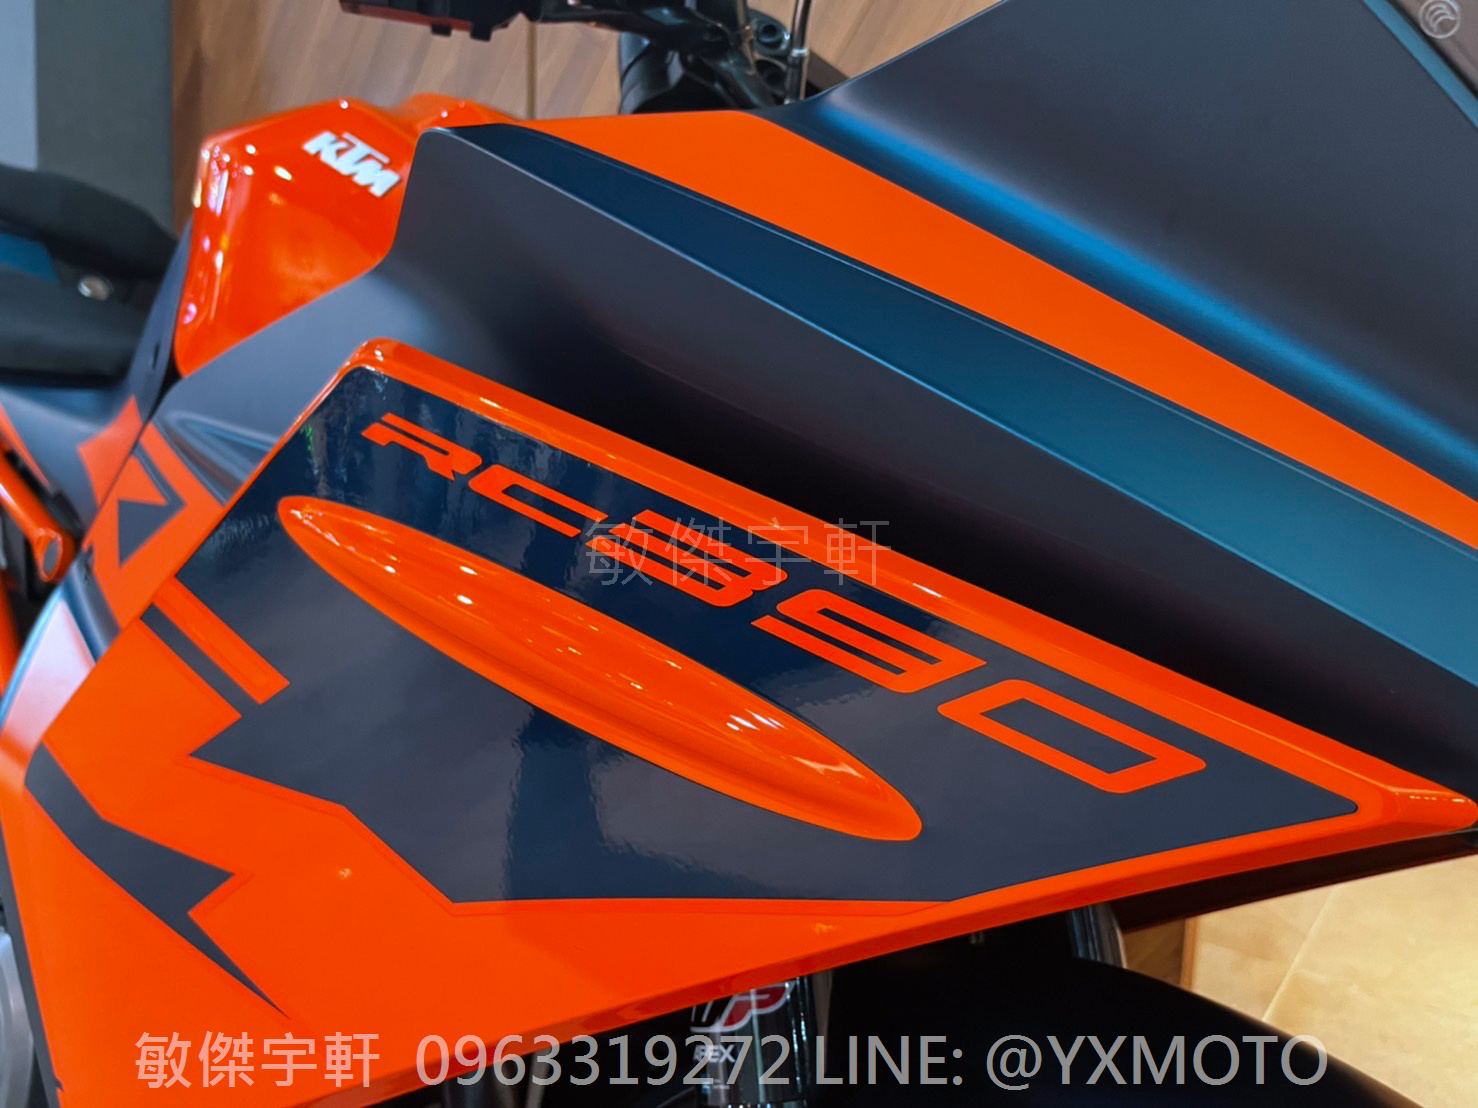 KTM RC390新車出售中 【敏傑宇軒】KTM RC390 2022 藍橘 總代理公司車 全額72期零利率 + 送連身皮衣 | 重車銷售職人-宇軒 (敏傑)